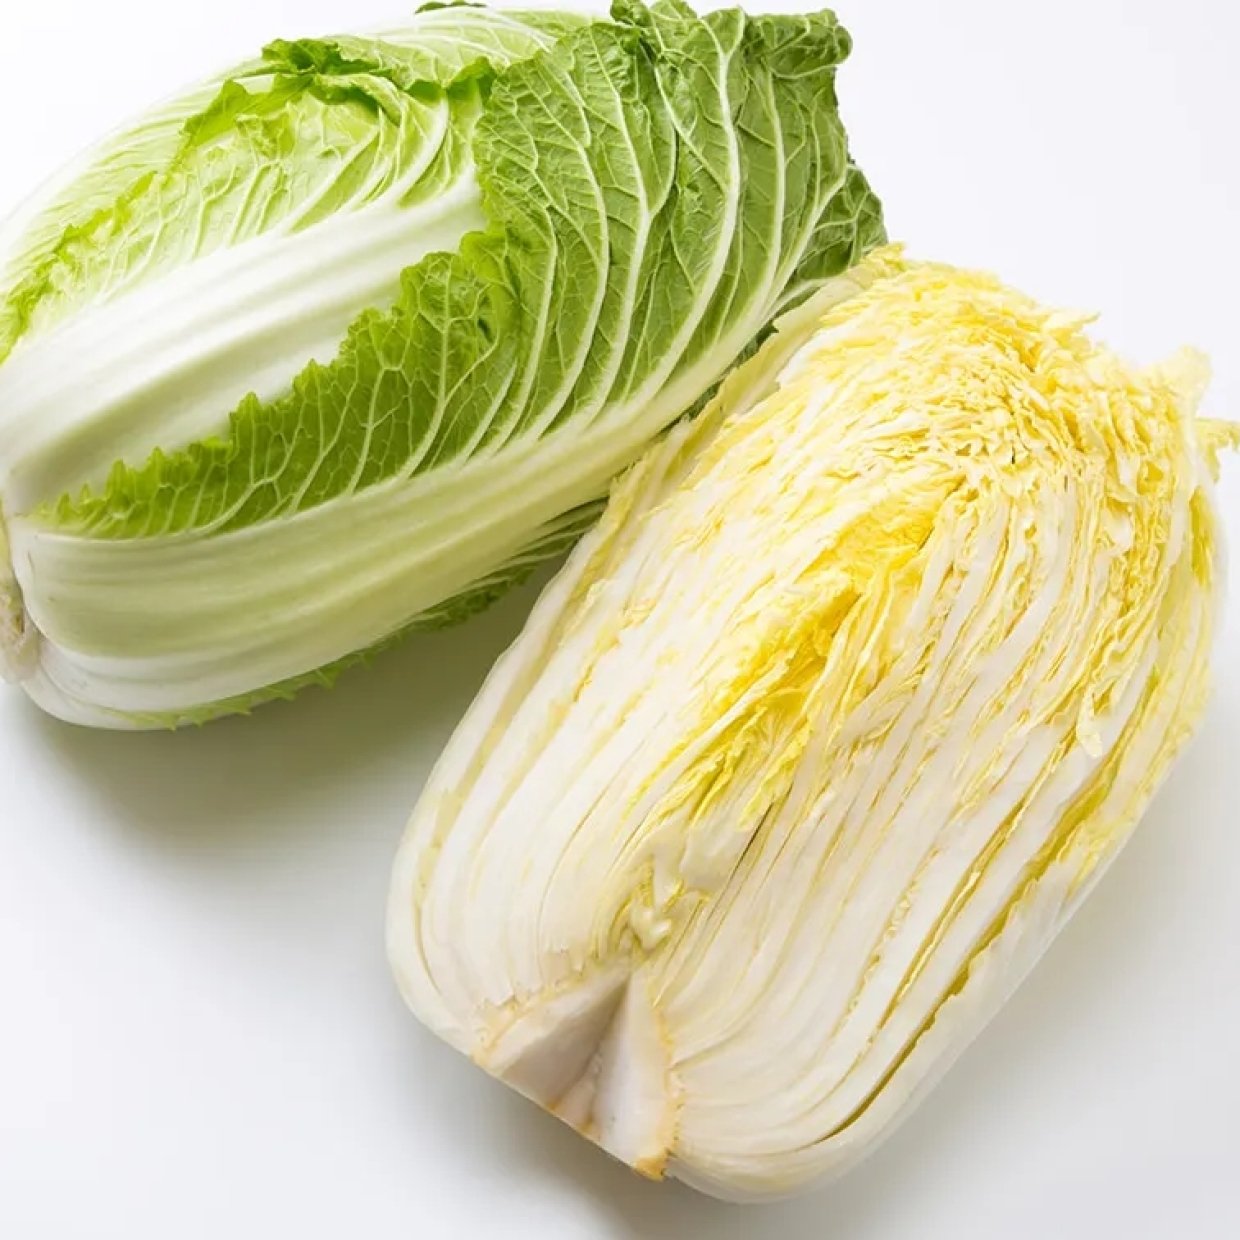  【野菜の保存術】旬の「白菜」を鮮度キープで正しく保存する方法 